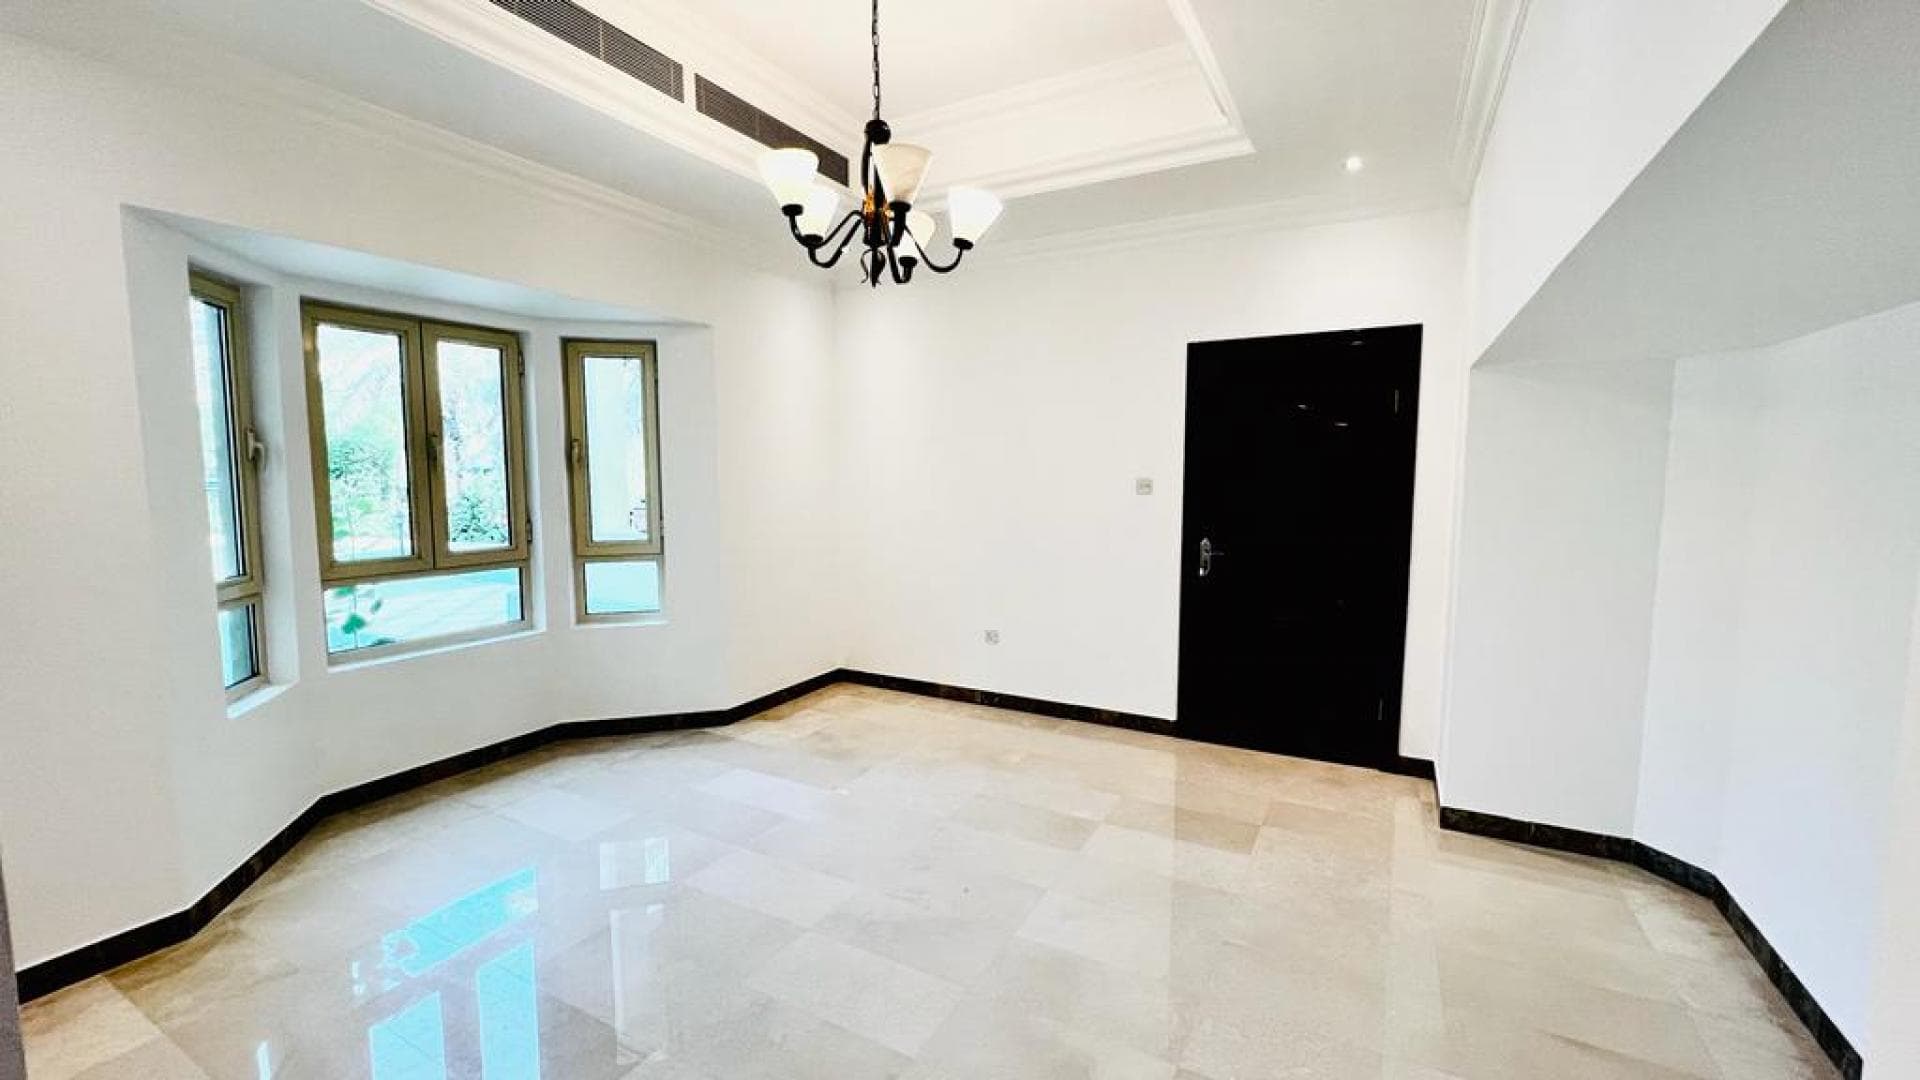 4 Bedroom Villa For Rent Al Thamam 13 Lp37330 288e47bfb339c800.jpeg